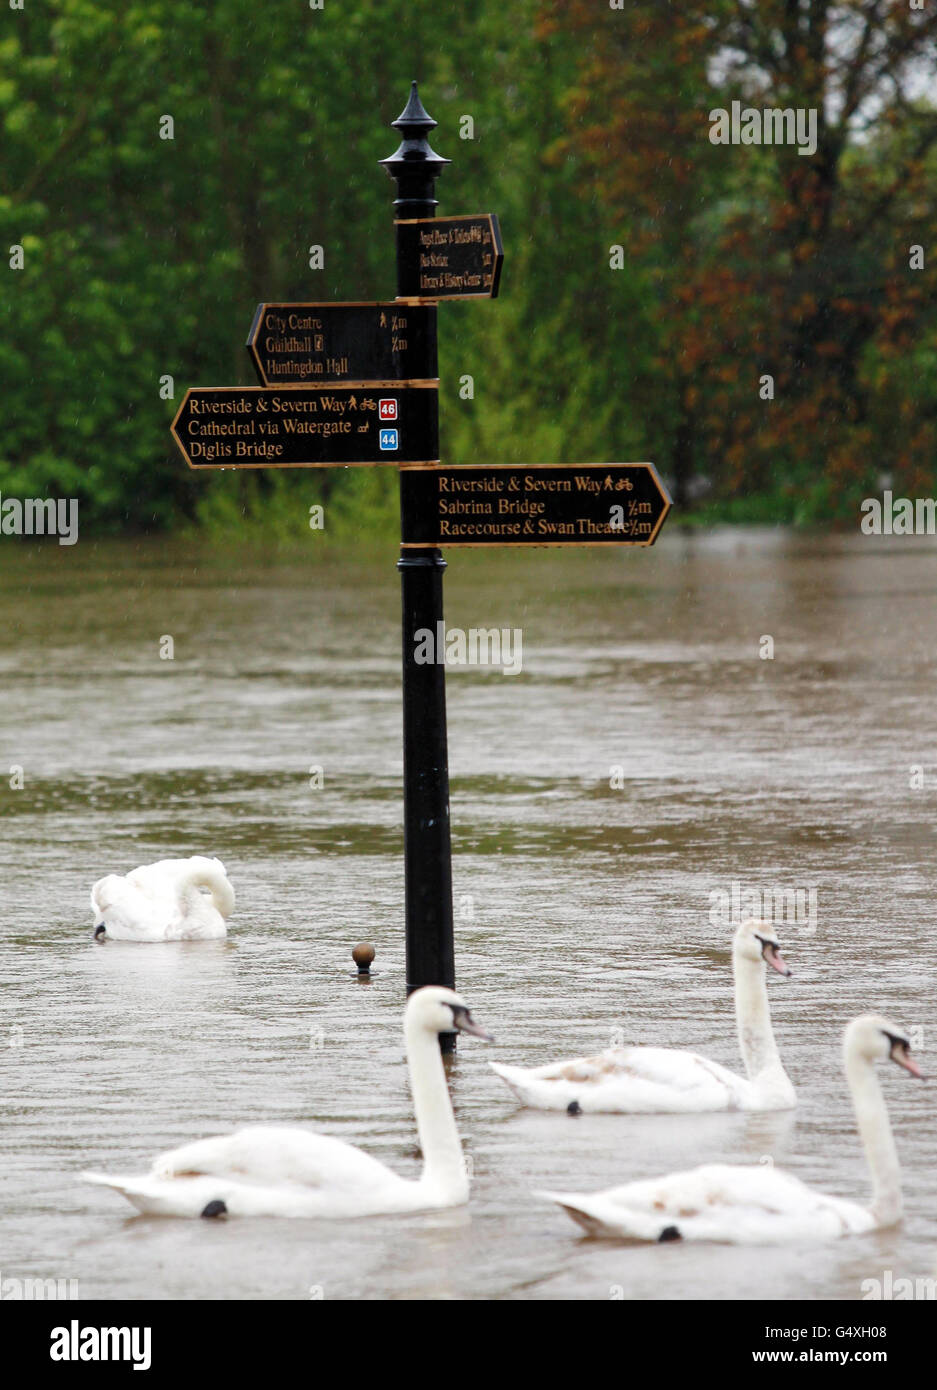 Schwäne schwimmen in Worcester an Wegweisern für Spaziergänge am Flussufer entlang des Flusses Severn vorbei, da Teile von England und Wales mit neuen Hochwasserängsten konfrontiert sind, nachdem nach dem nassesten April seit Beginn der Aufzeichnungen über Nacht starker Regen Südbritanien überschwemmt hatte. Stockfoto